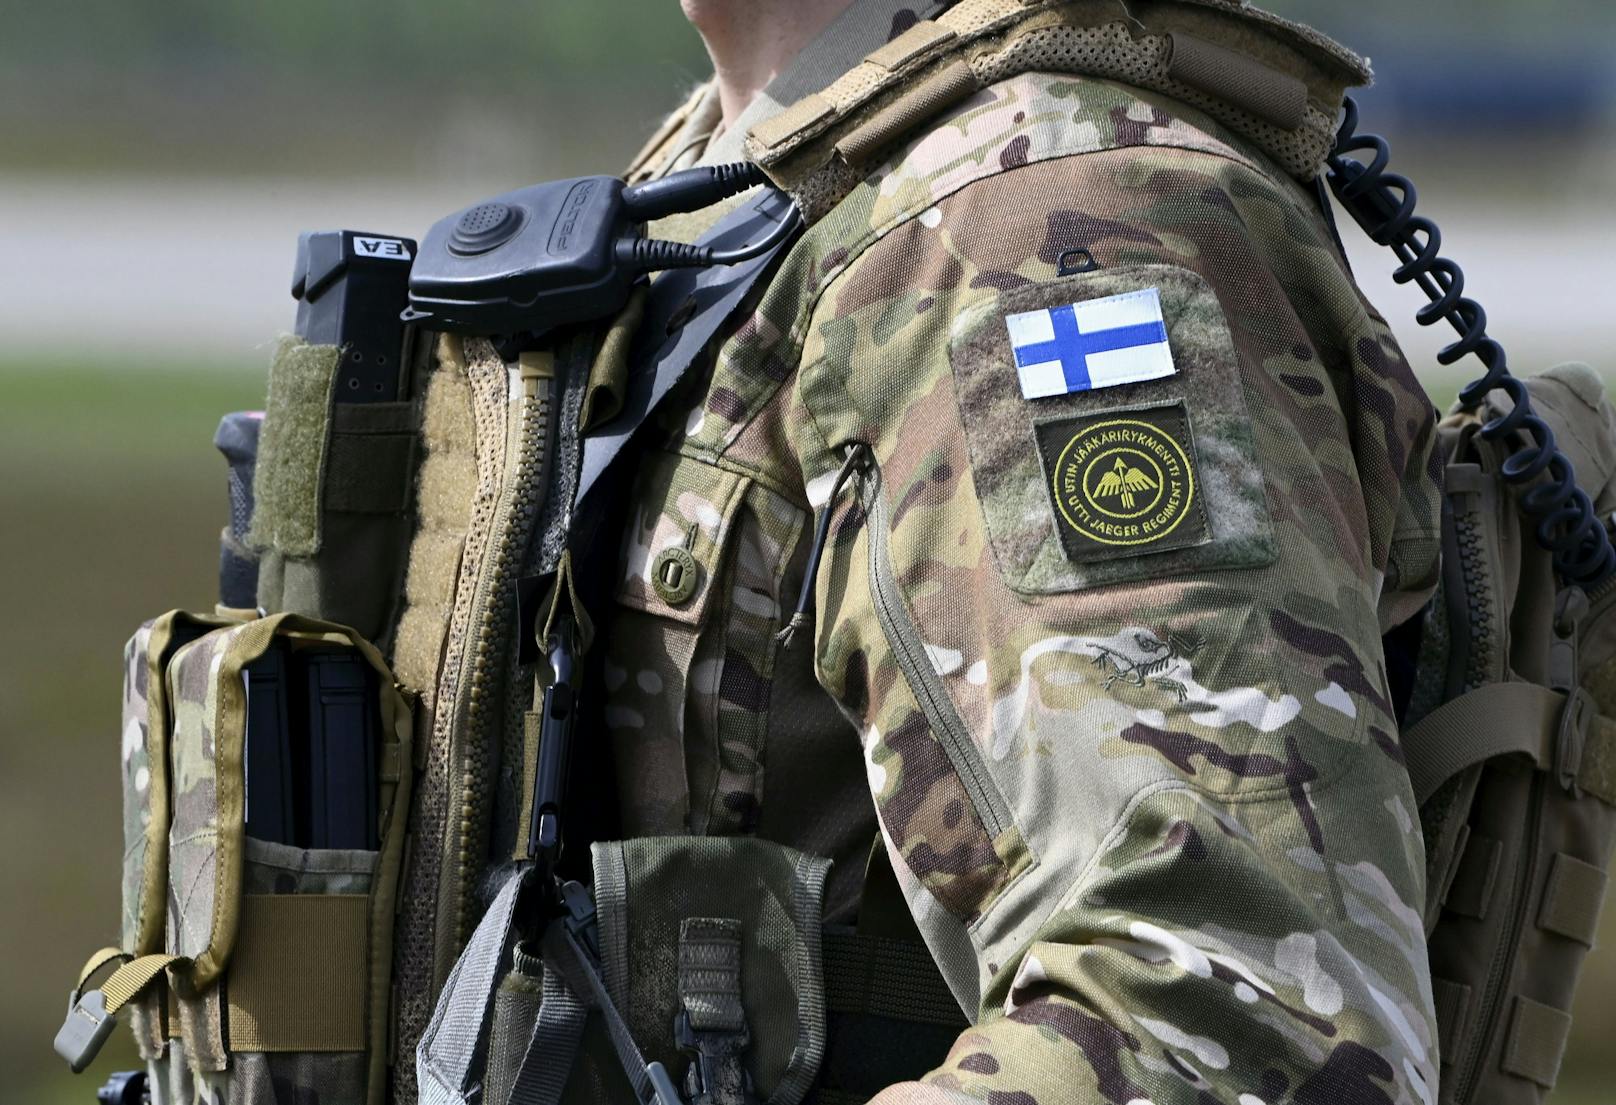 Finnland tritt NATO bei – Russland wetzt die Messer